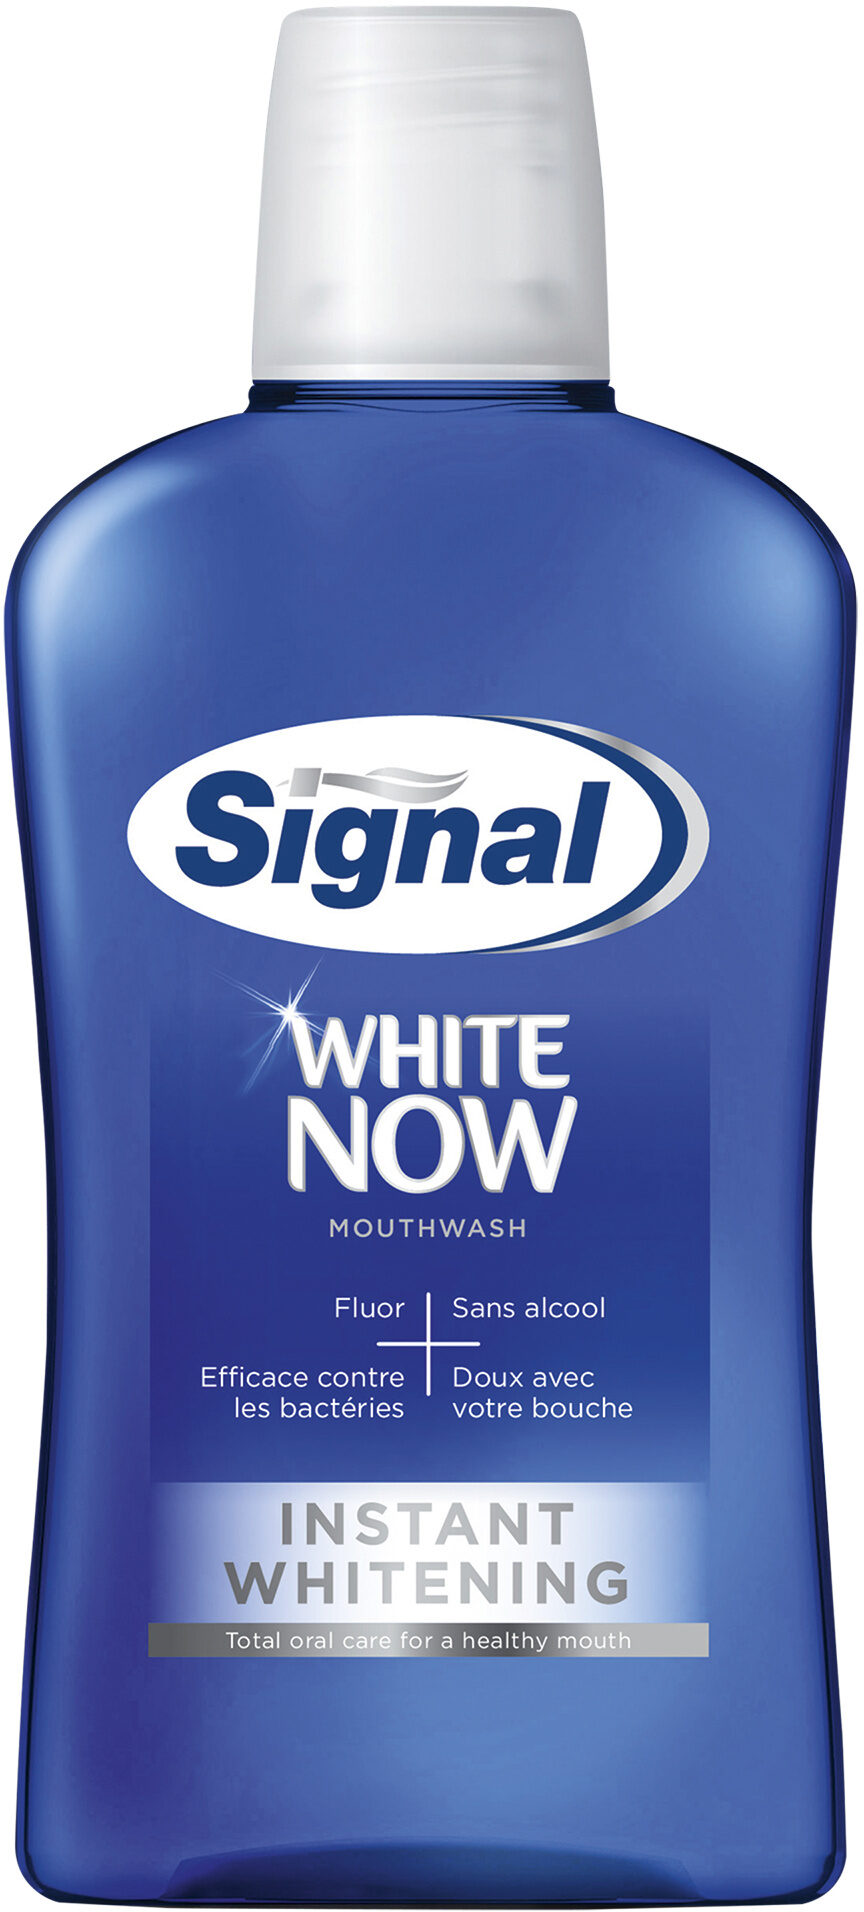 SIGNAL Bain de Bouche Antibactérien White Now 500ml - Product - fr